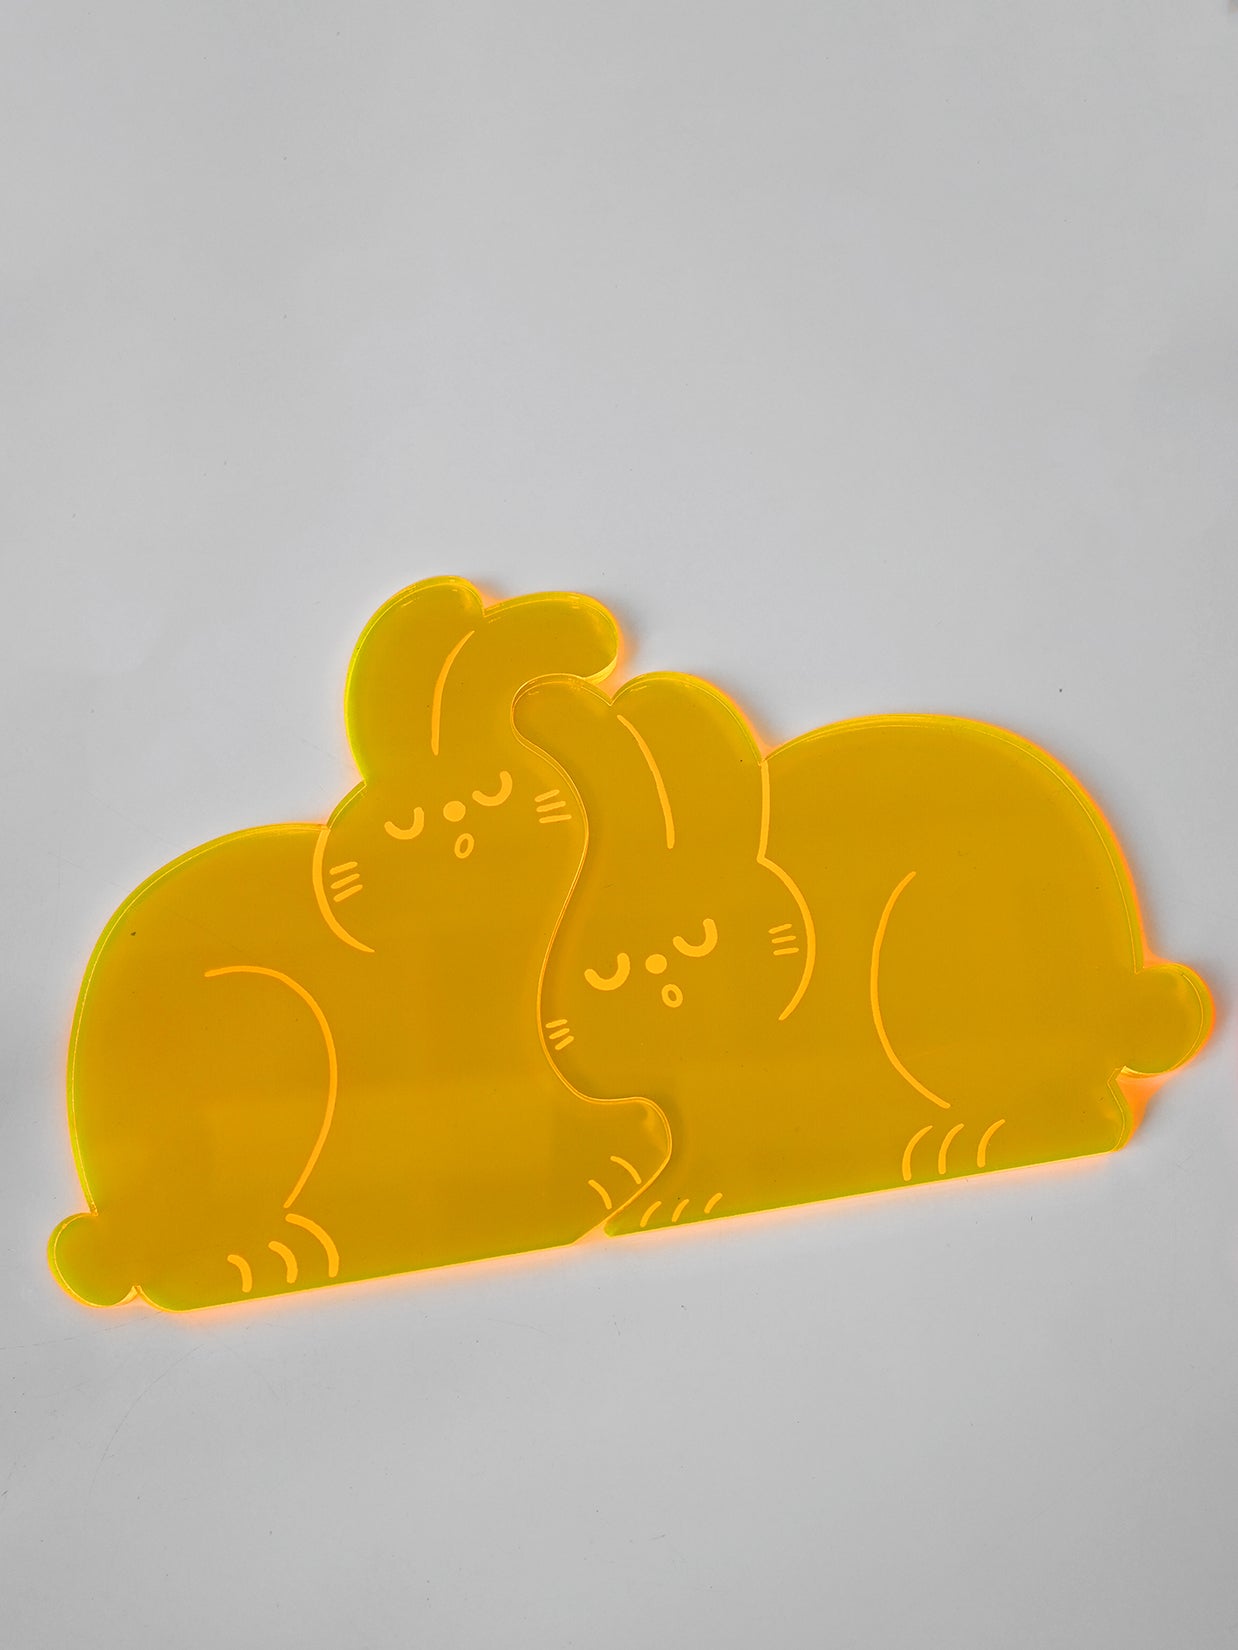 Vermeil Boobarista Anime Acrylic Coaster 